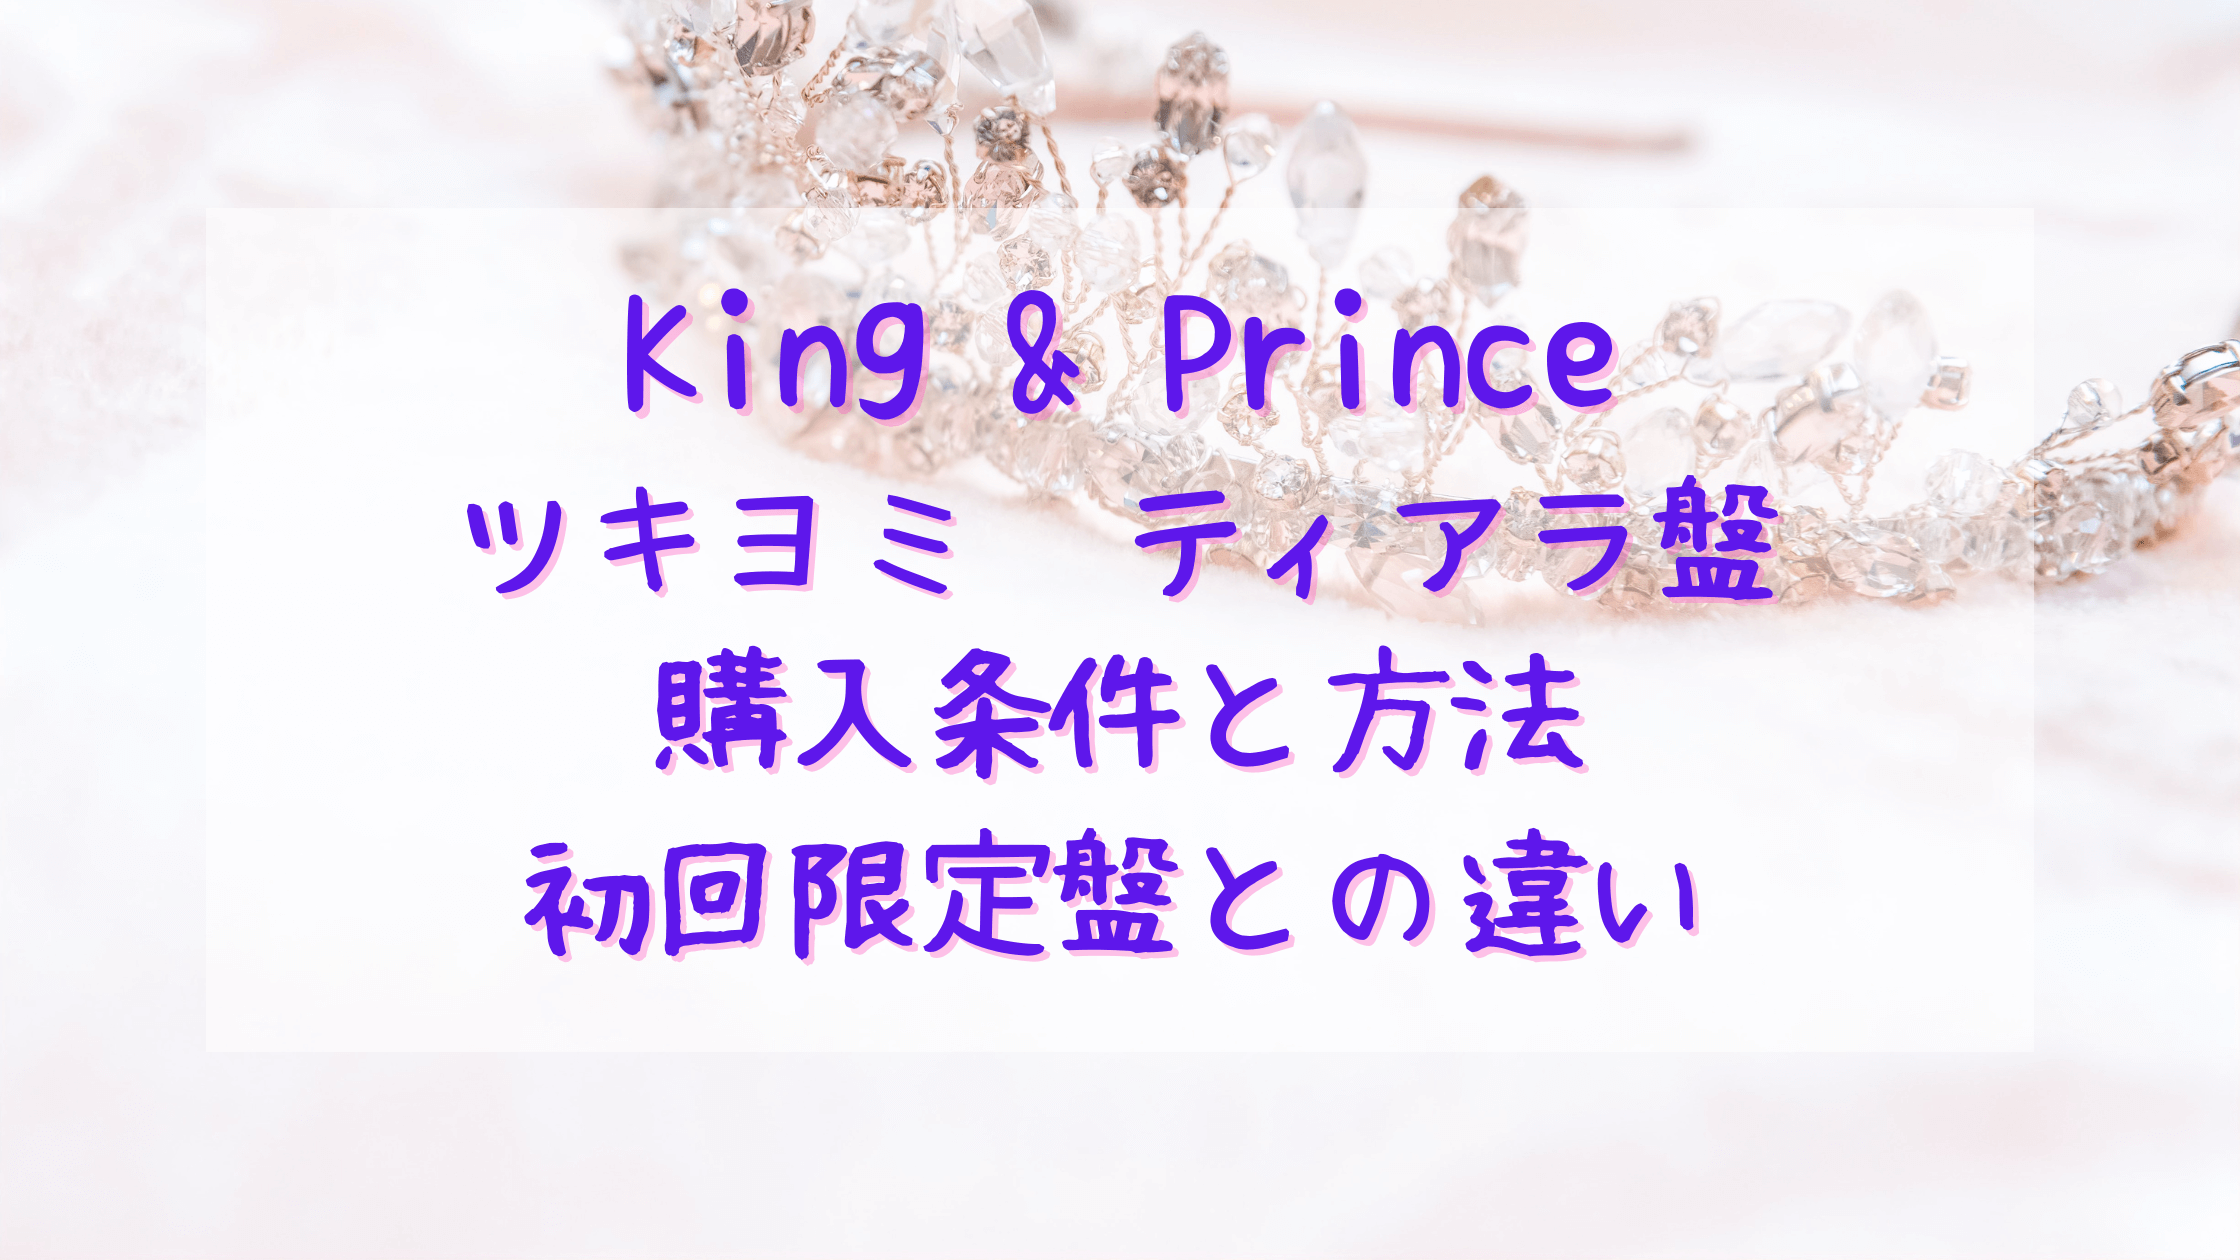 キンプリKing & Princeツキヨミ限定盤/ティアラ盤の購入方法と会員認証 